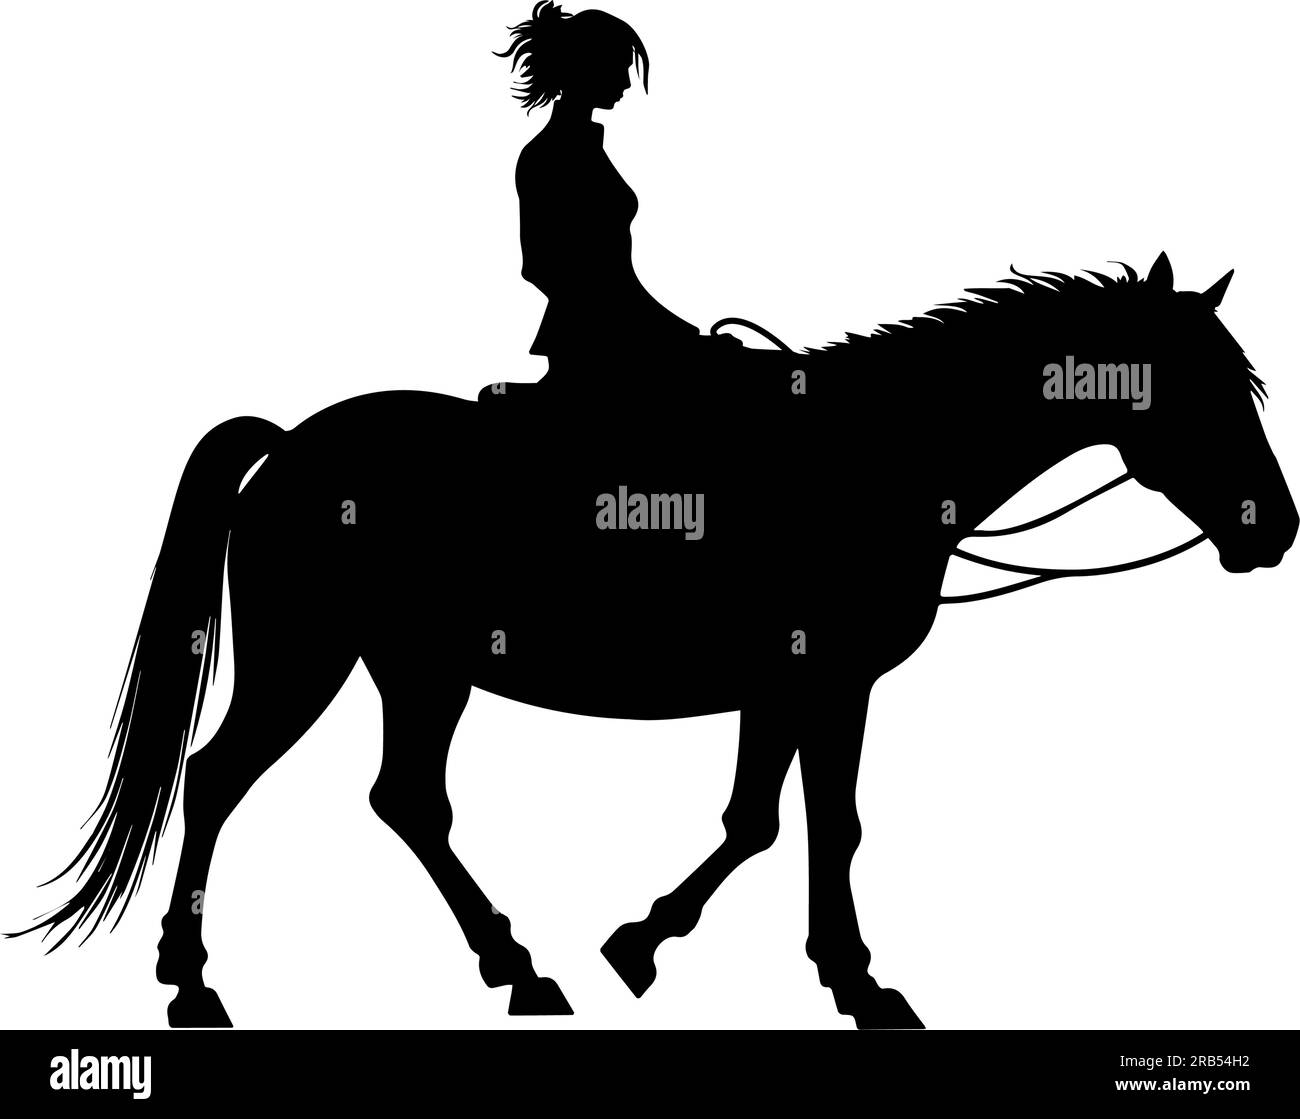 Girl on horseback silhouette isolated on white background. Vector illustration Stock Vector